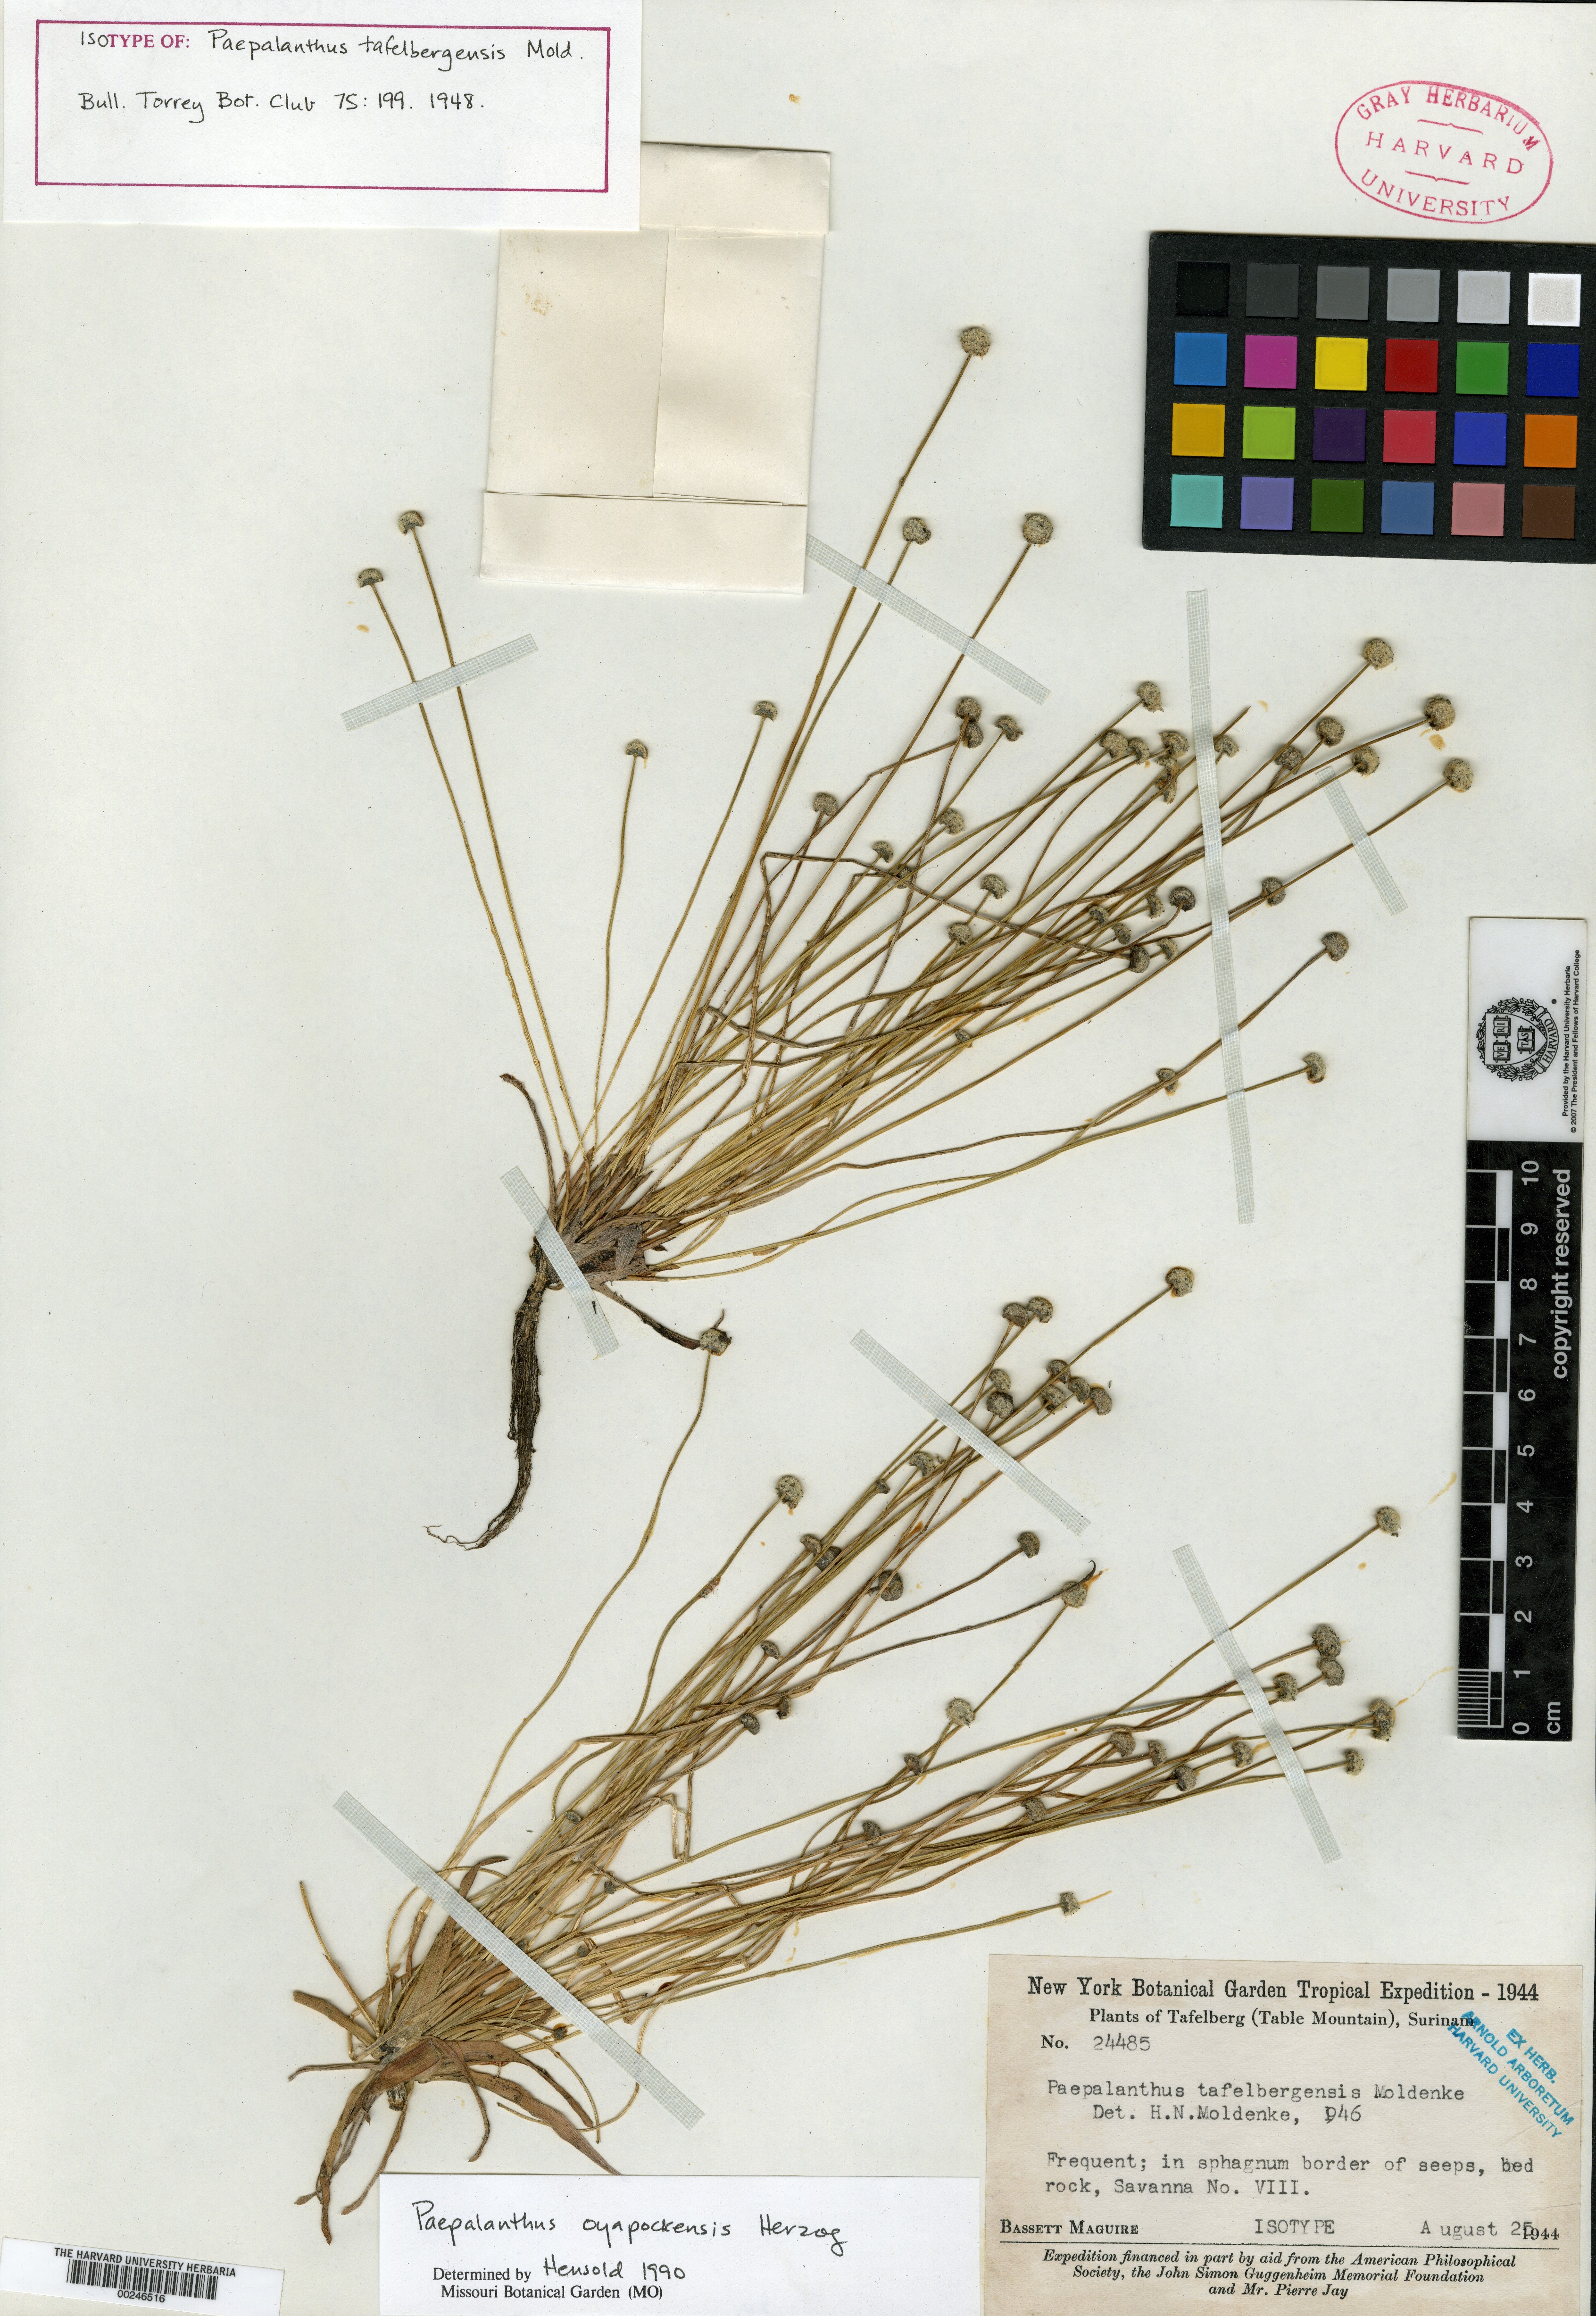 Syngonanthus tenuis var. bulbifer image